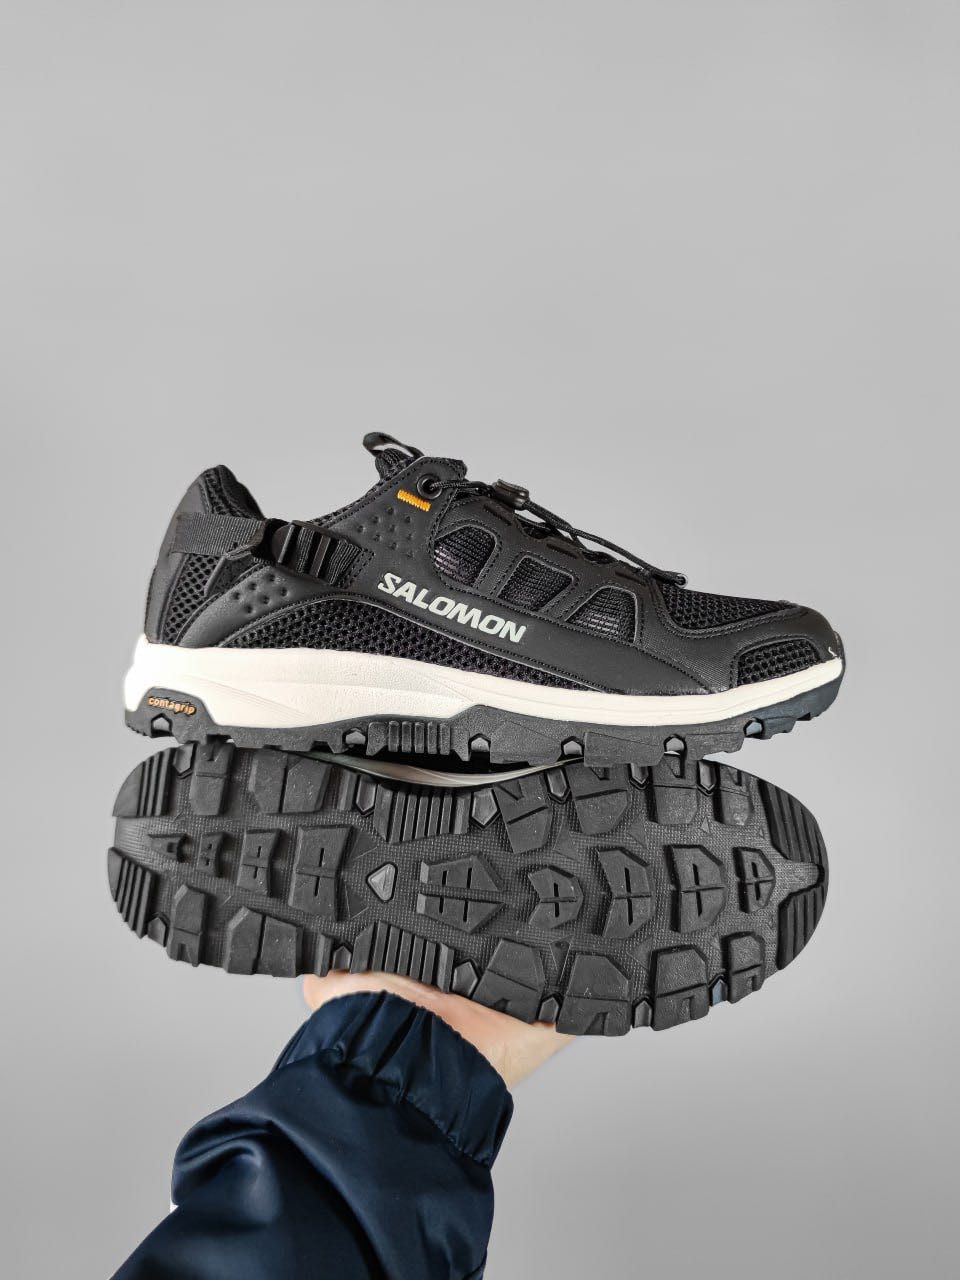 Кросівки Salomon Techamphibian Black, кросовки Саломон чорного кольору